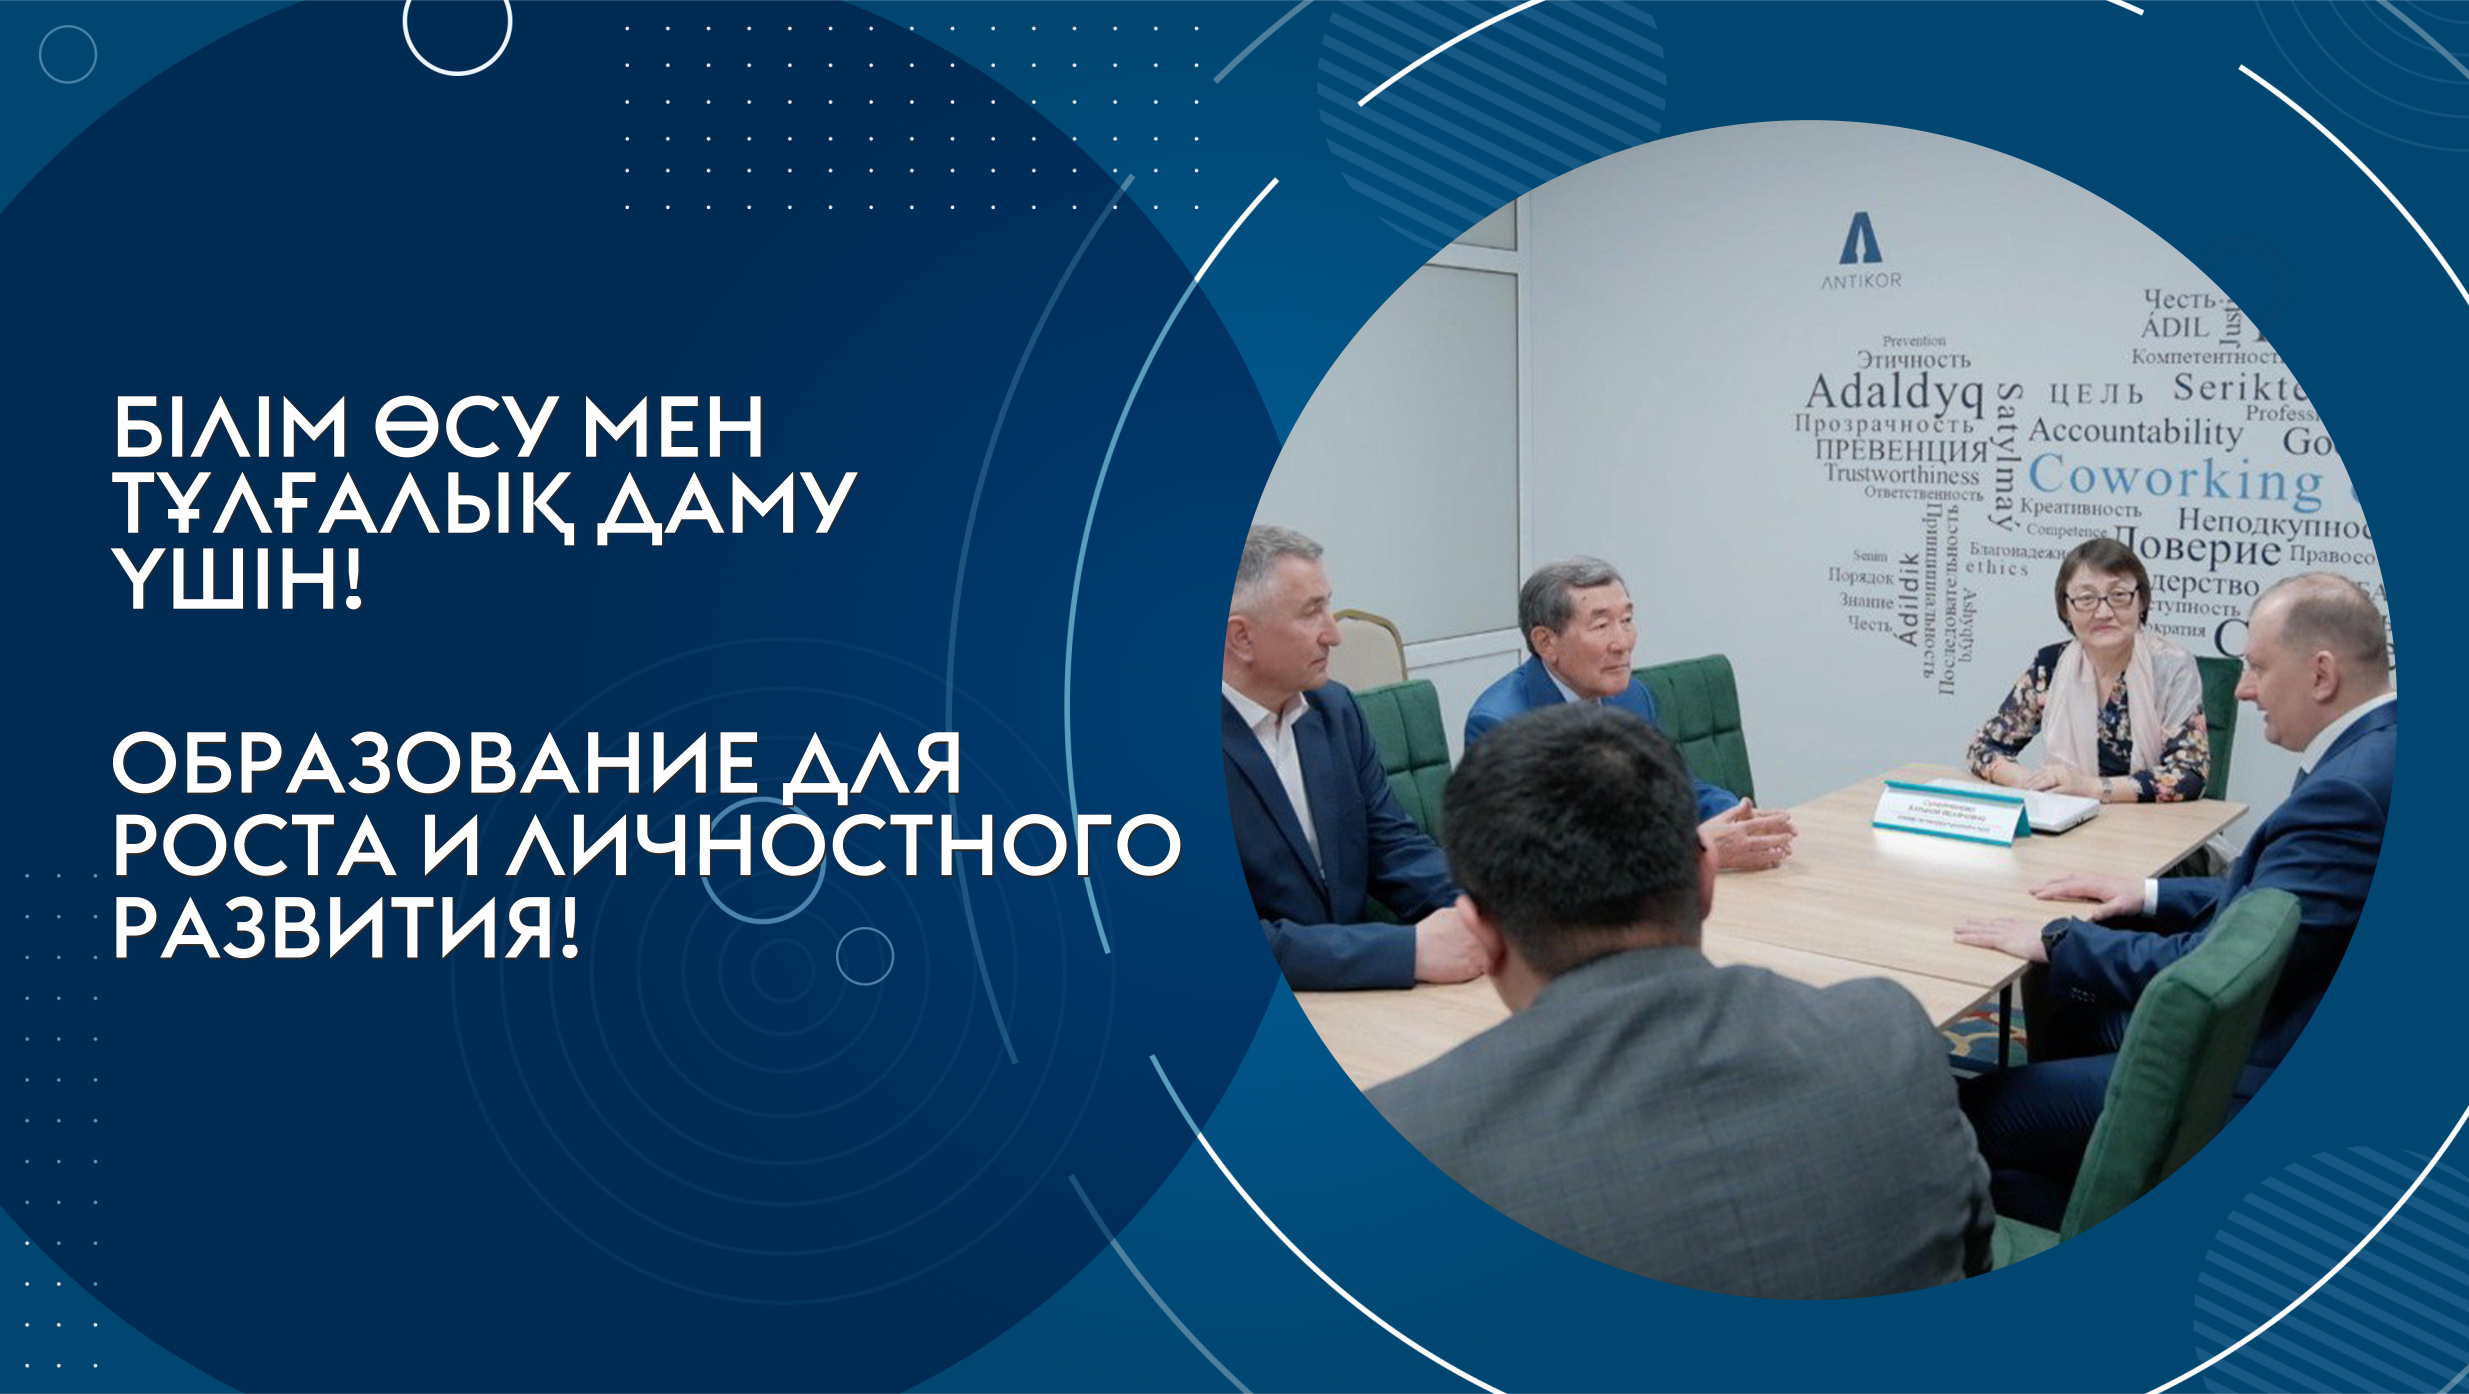 Первый антикоррупционный коворкинг-центр в стране открылся в Карагандинском университете Казпотребсоюза